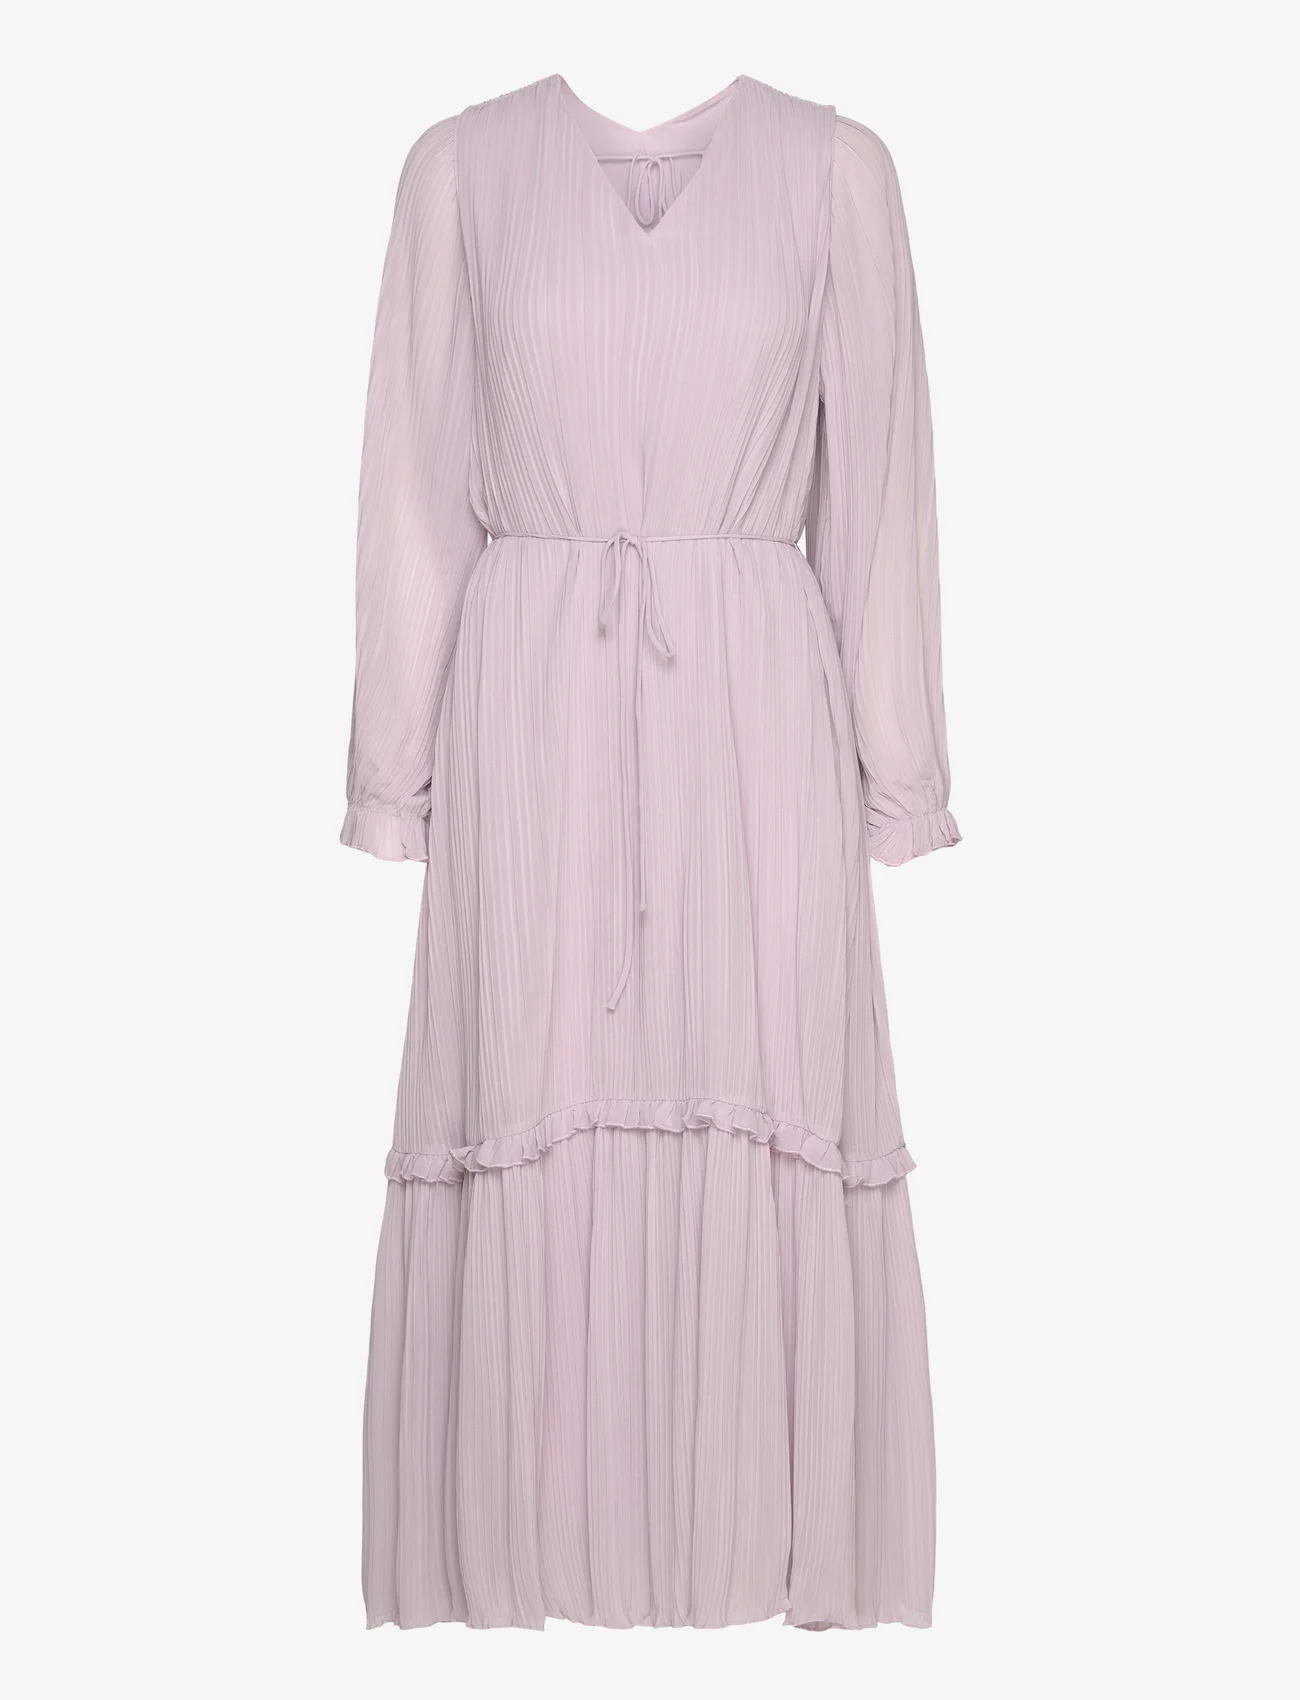 Bruuns Bazaar - Hebe Hamida dress - festklær til outlet-priser - purple rose - 0